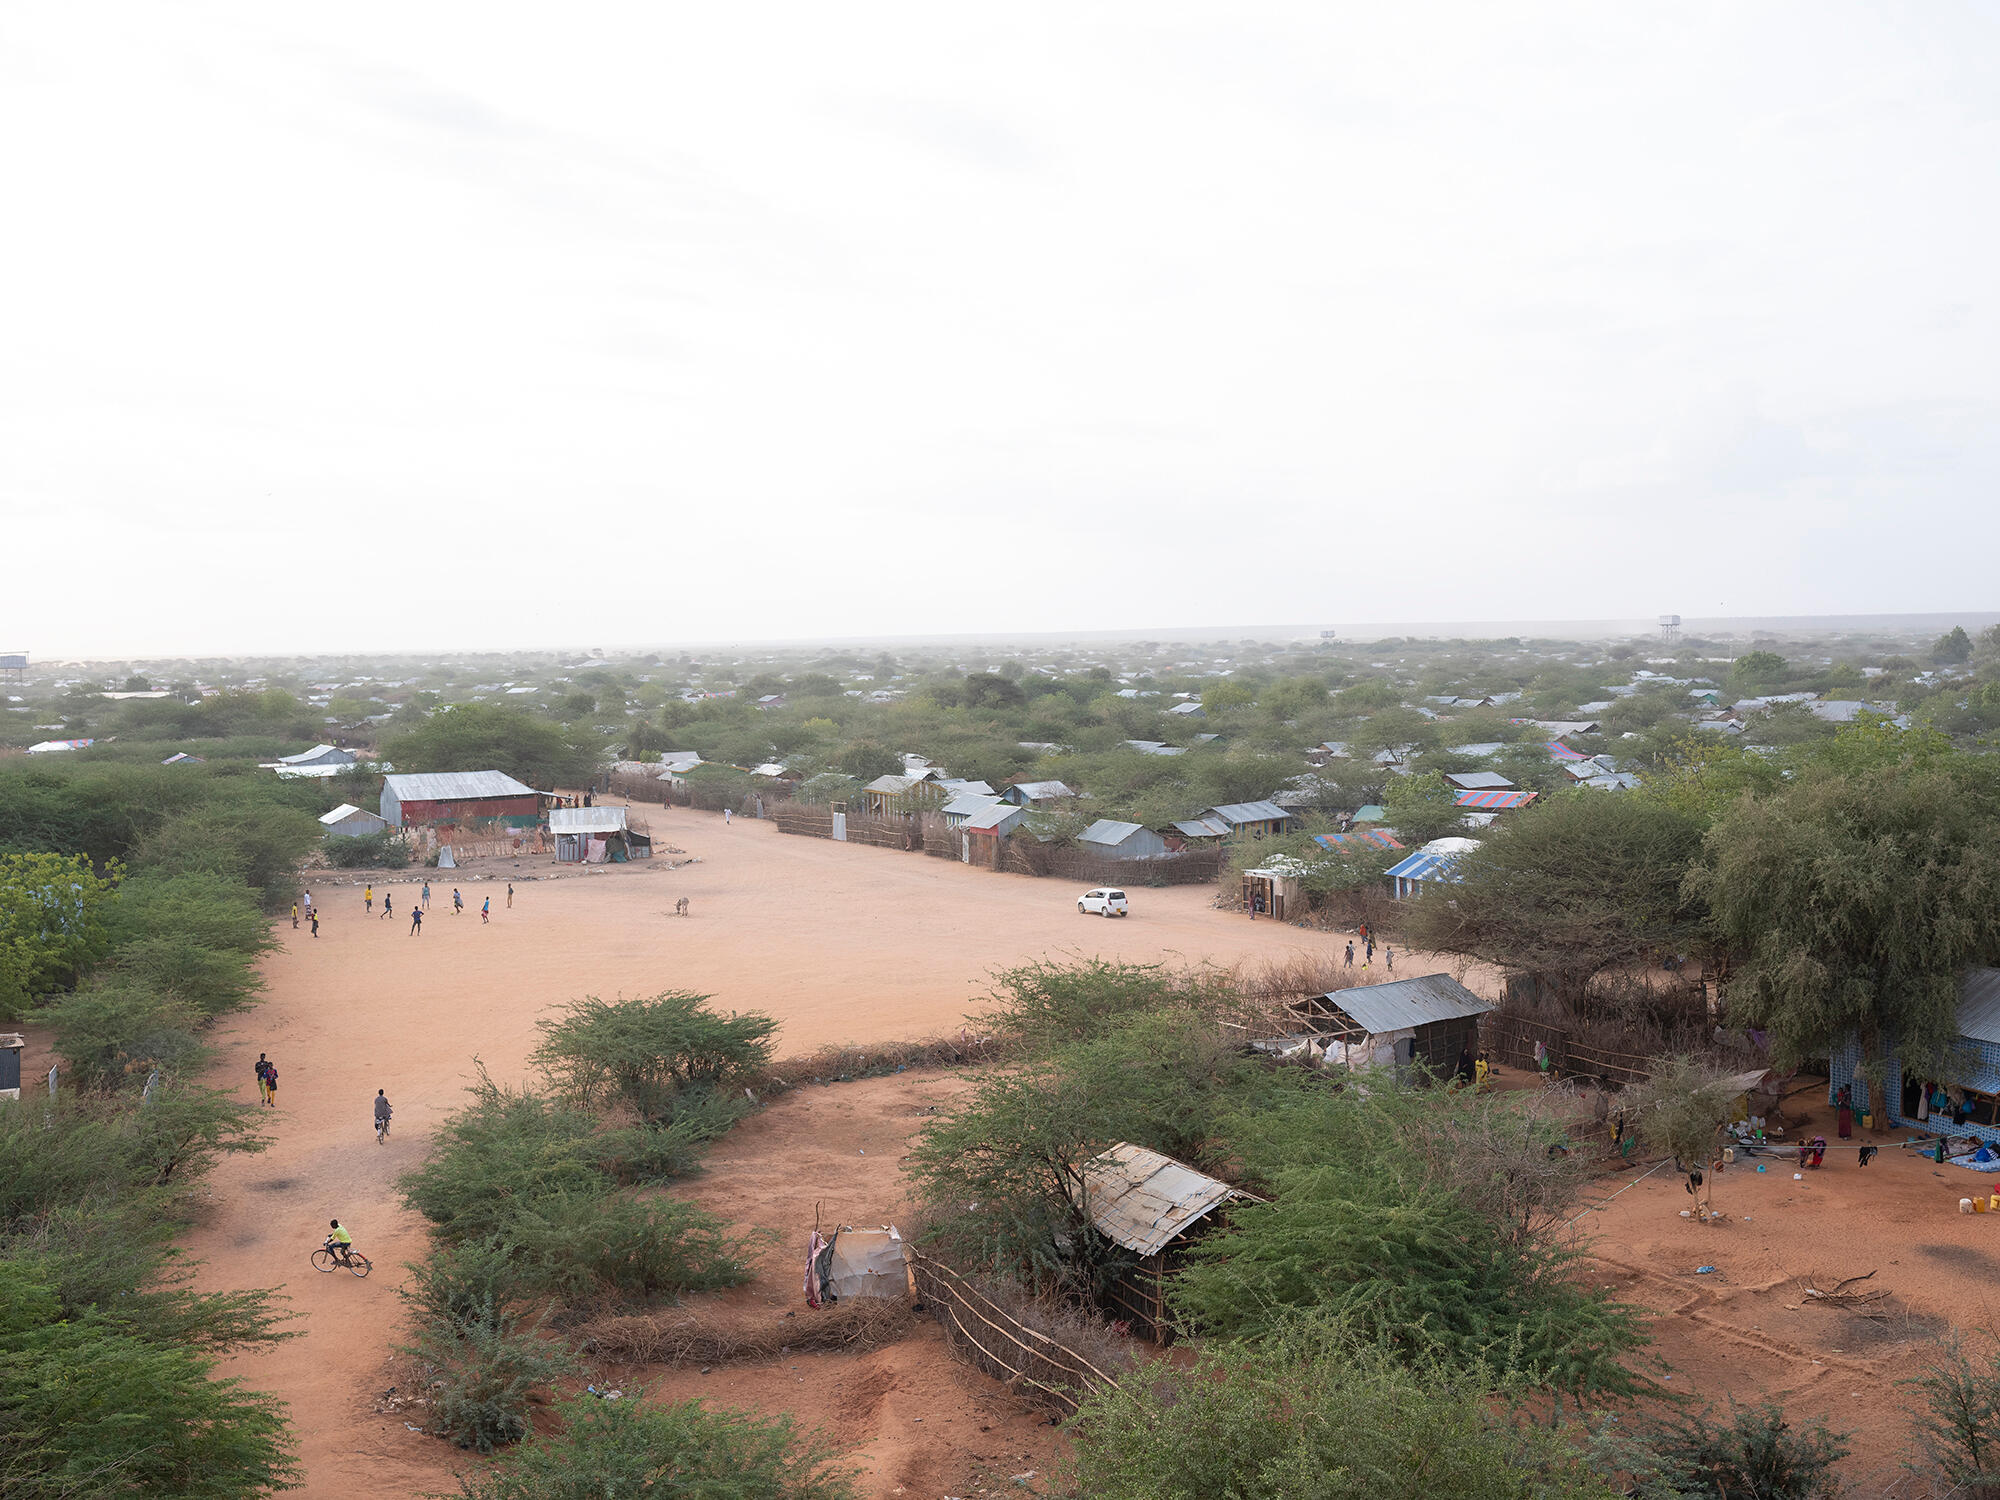 Solusi mendesak diperlukan bagi para pengungsi di Daddab, Kenya, saat kamp-kamp ditutup